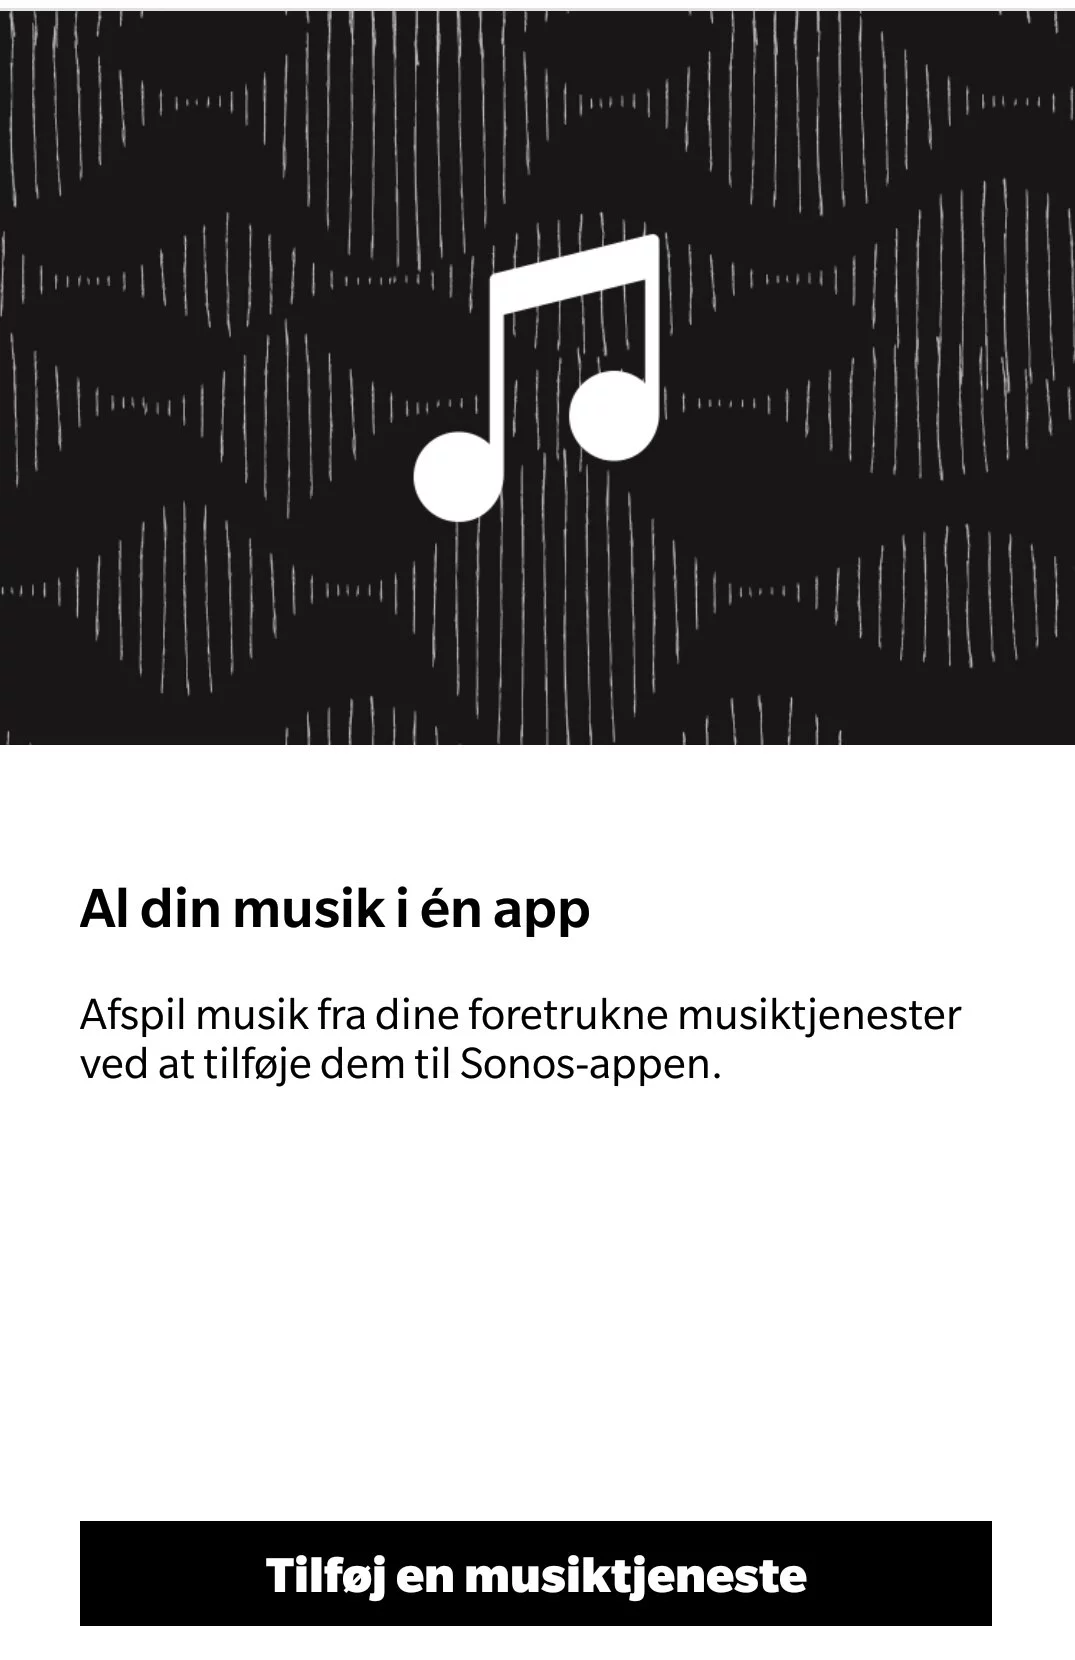 Sonos One app musiktjenester